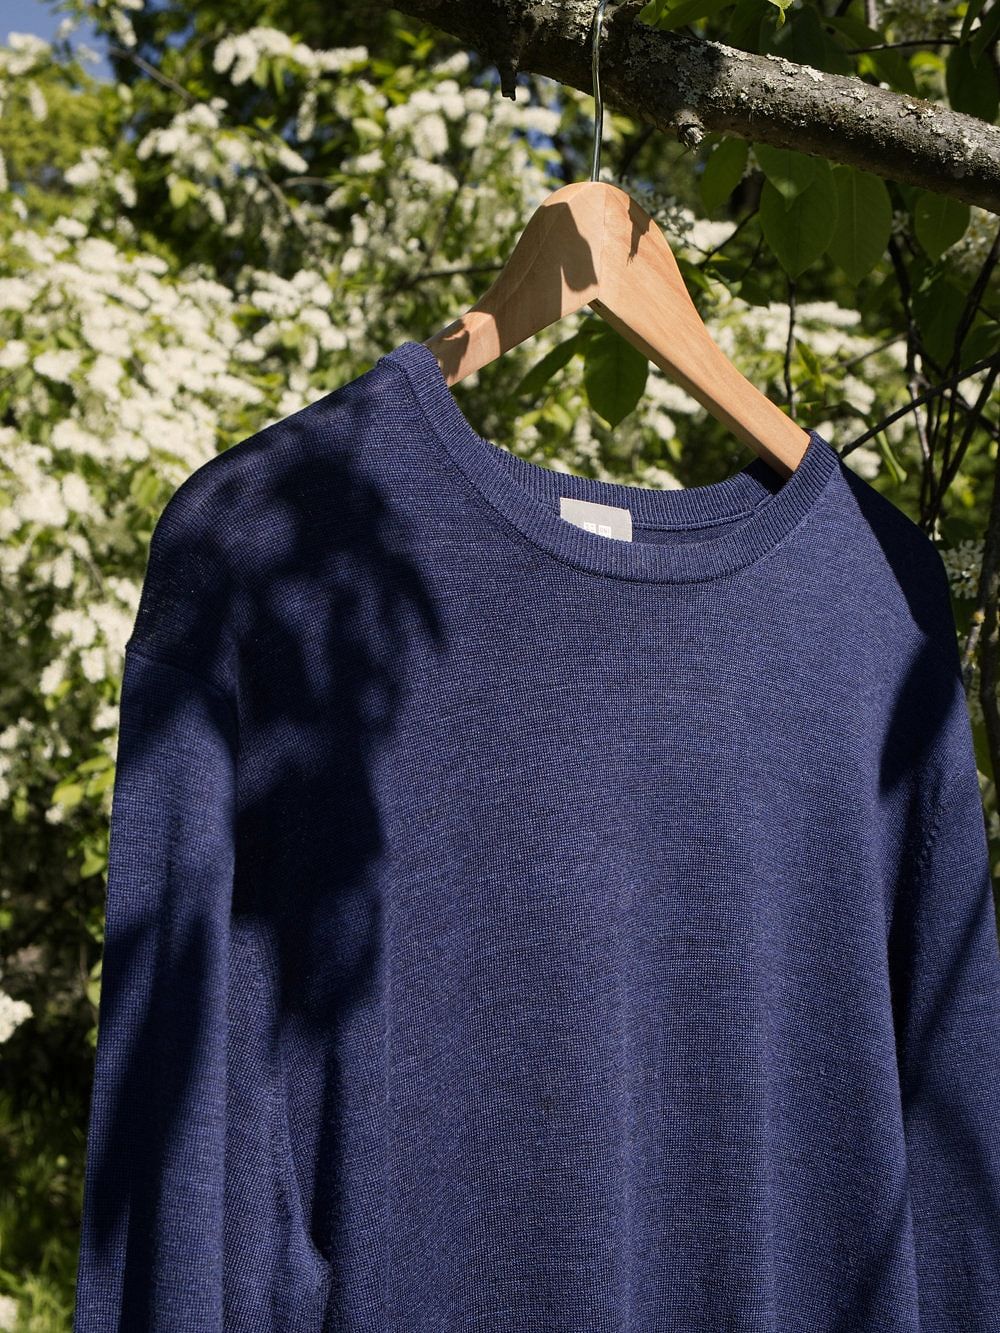 A blue merino wool knit